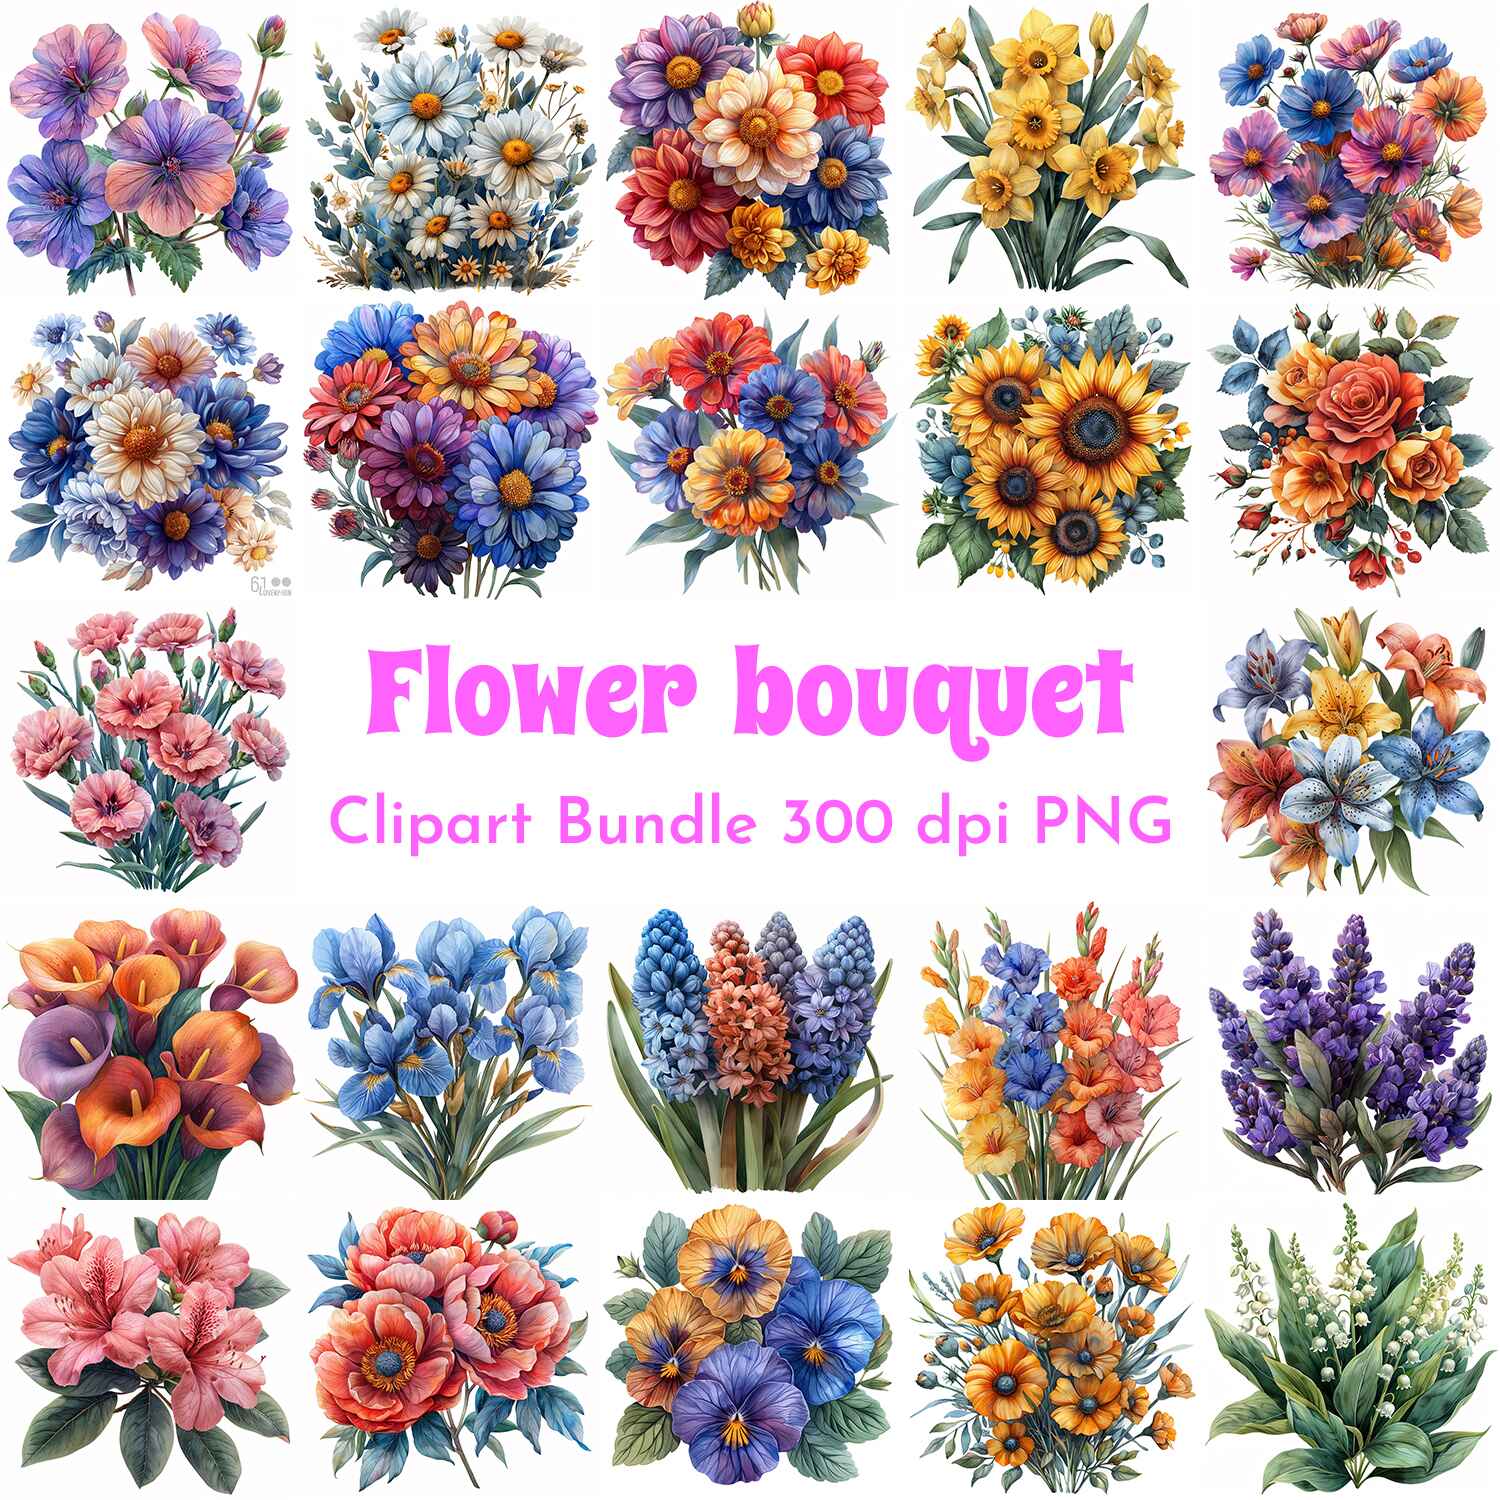 Flower Bouquet Clipart Bundle cover image.